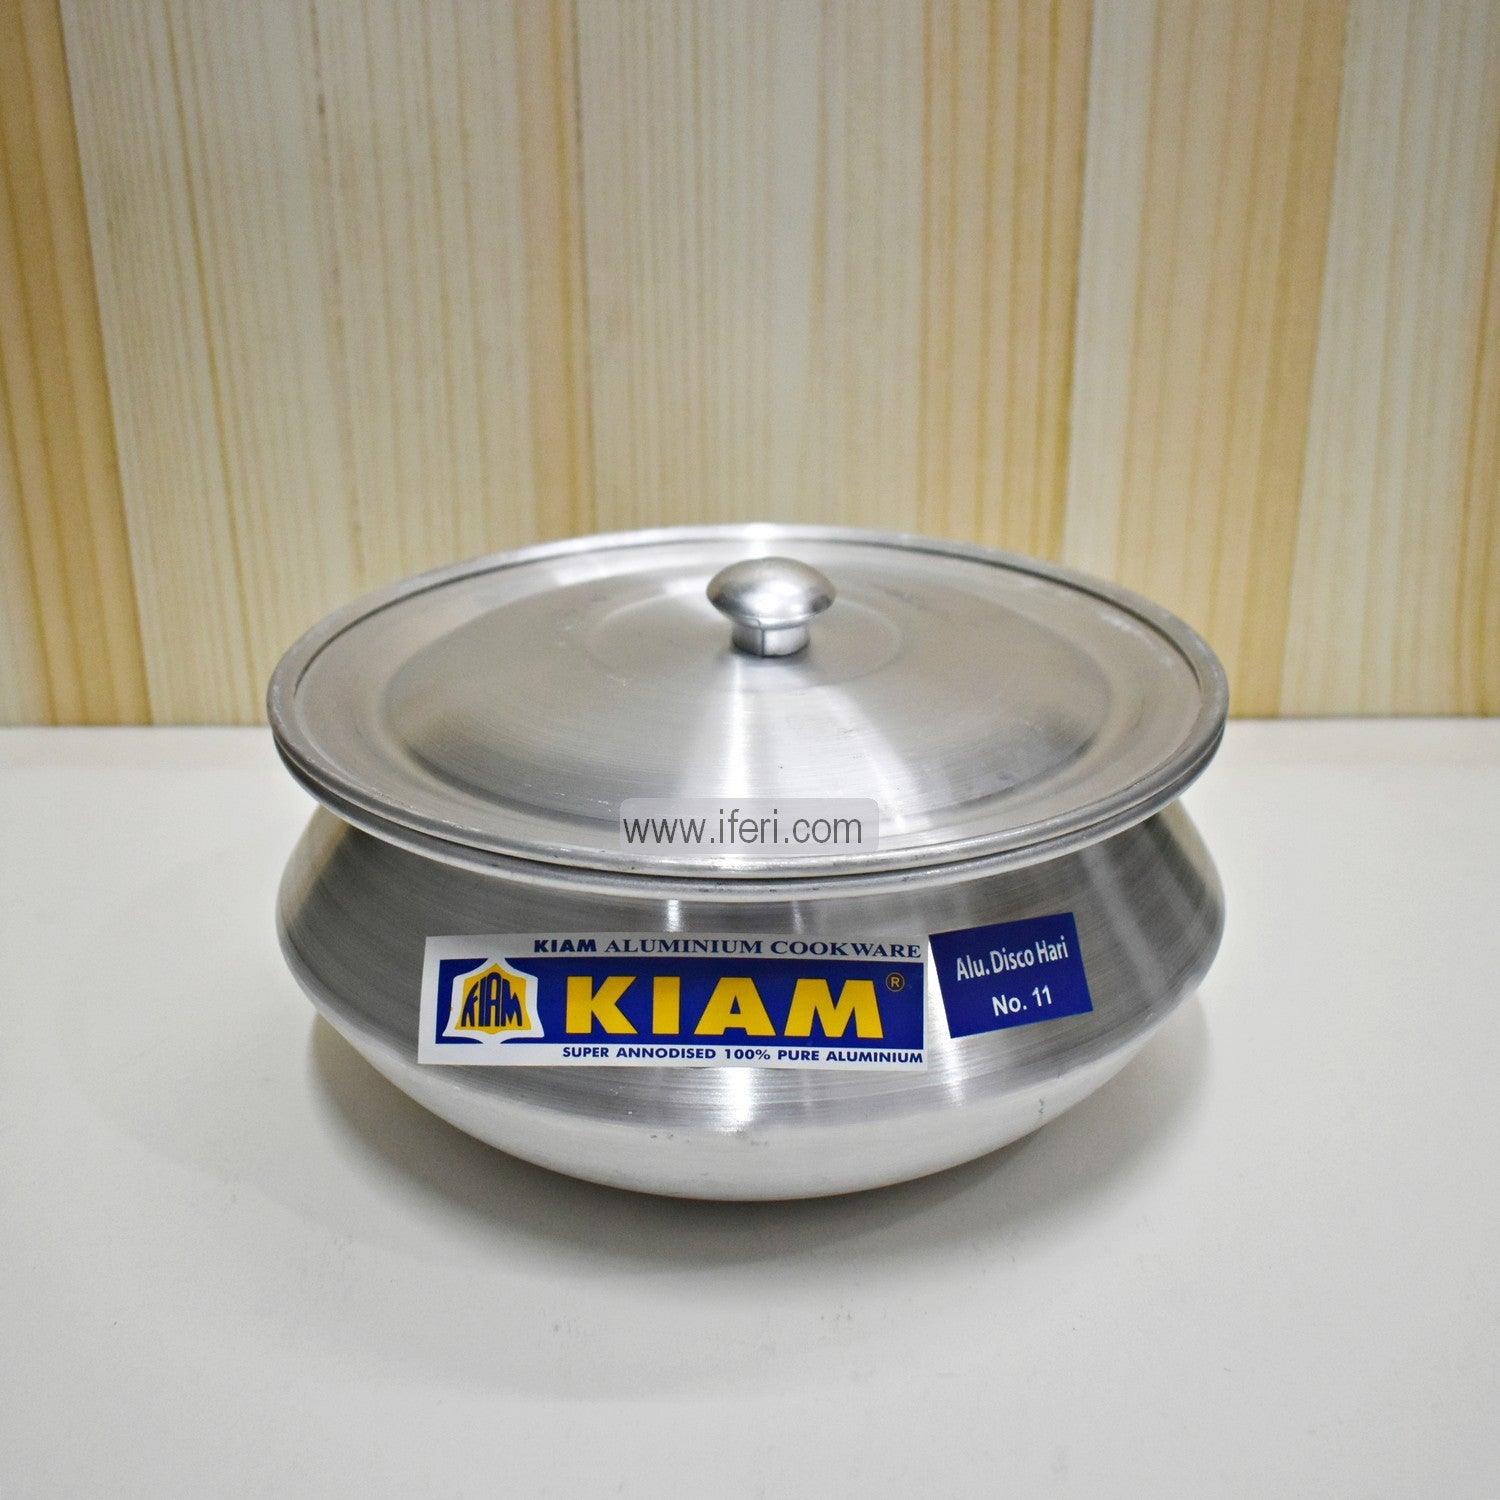 6 cm Kiam Aluminium Hari Cookware With Aluminium Lid BCG02221 Price in Bangladesh - iferi.com